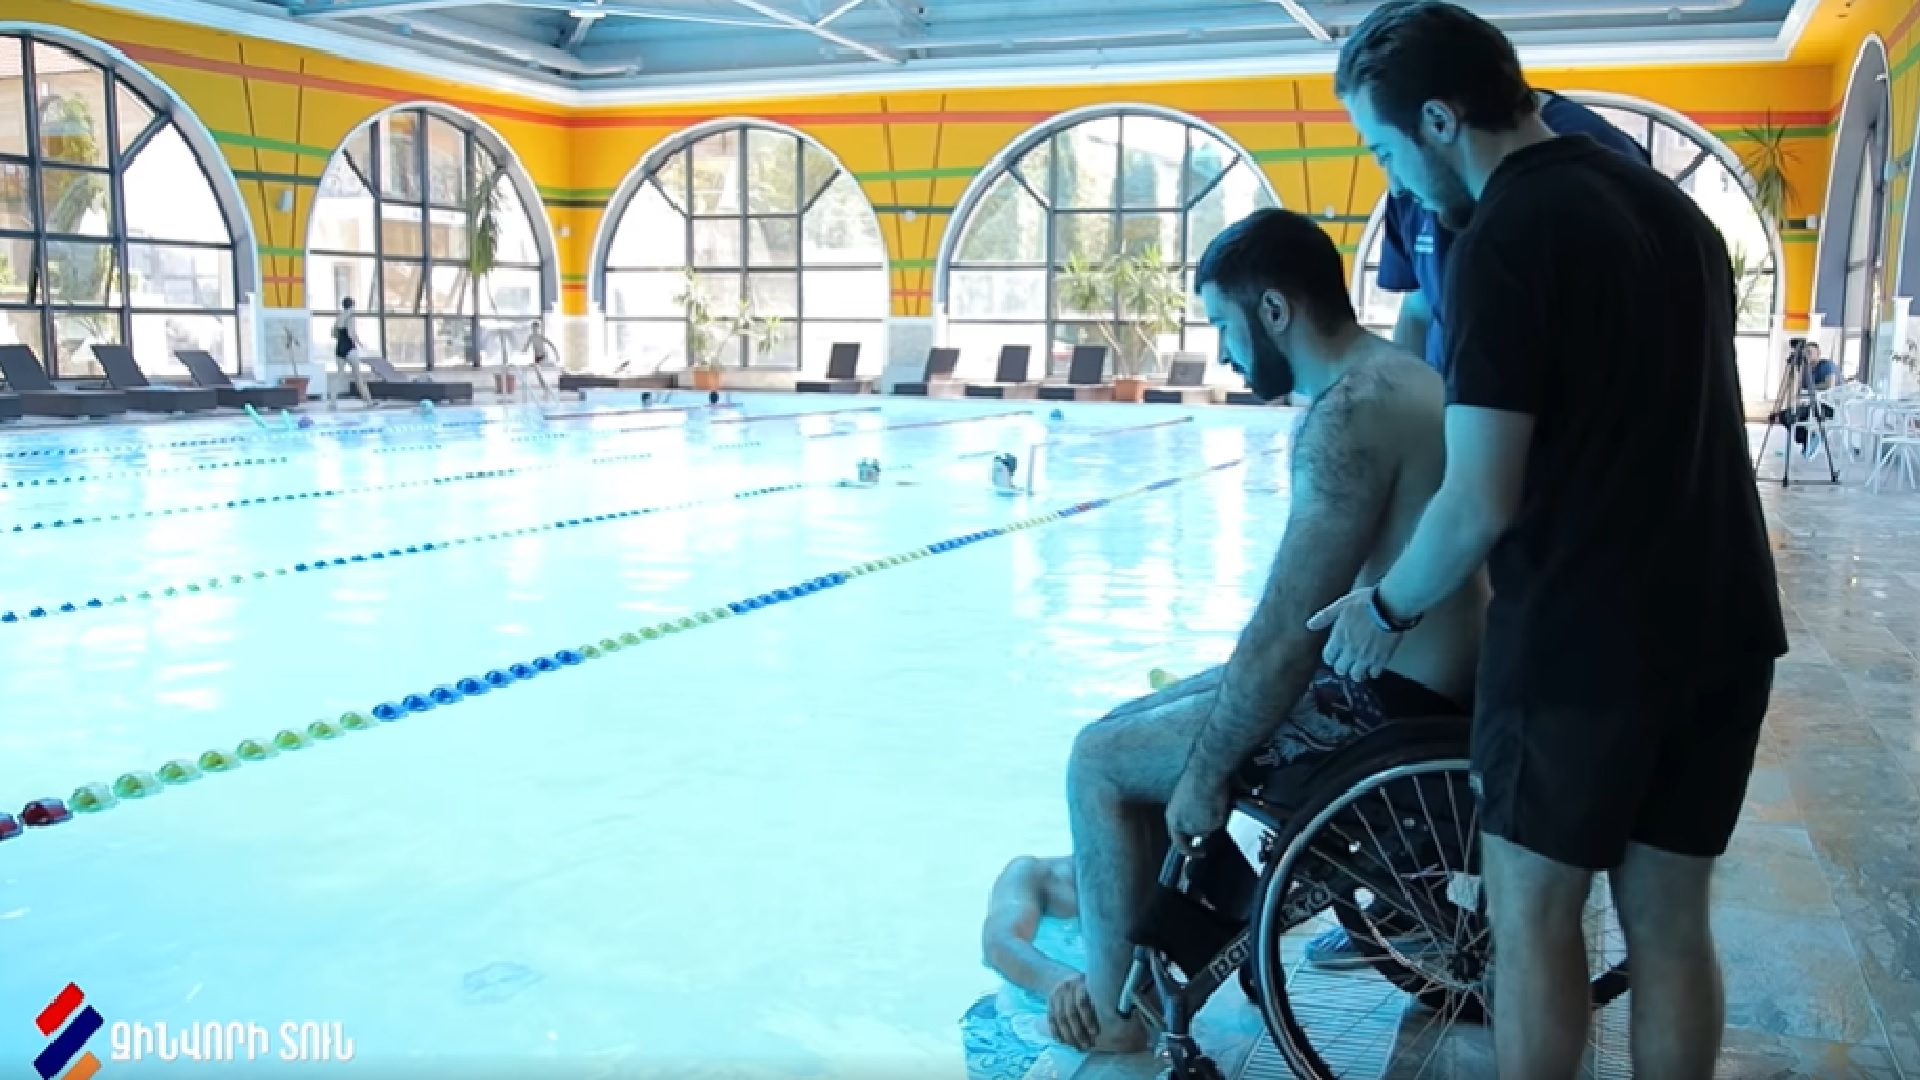 "Զինվորի տուն" վերականգնողական կենտրոնի տղաները լողի միջոցով նաև այլ երազանքներ են իրականացնում